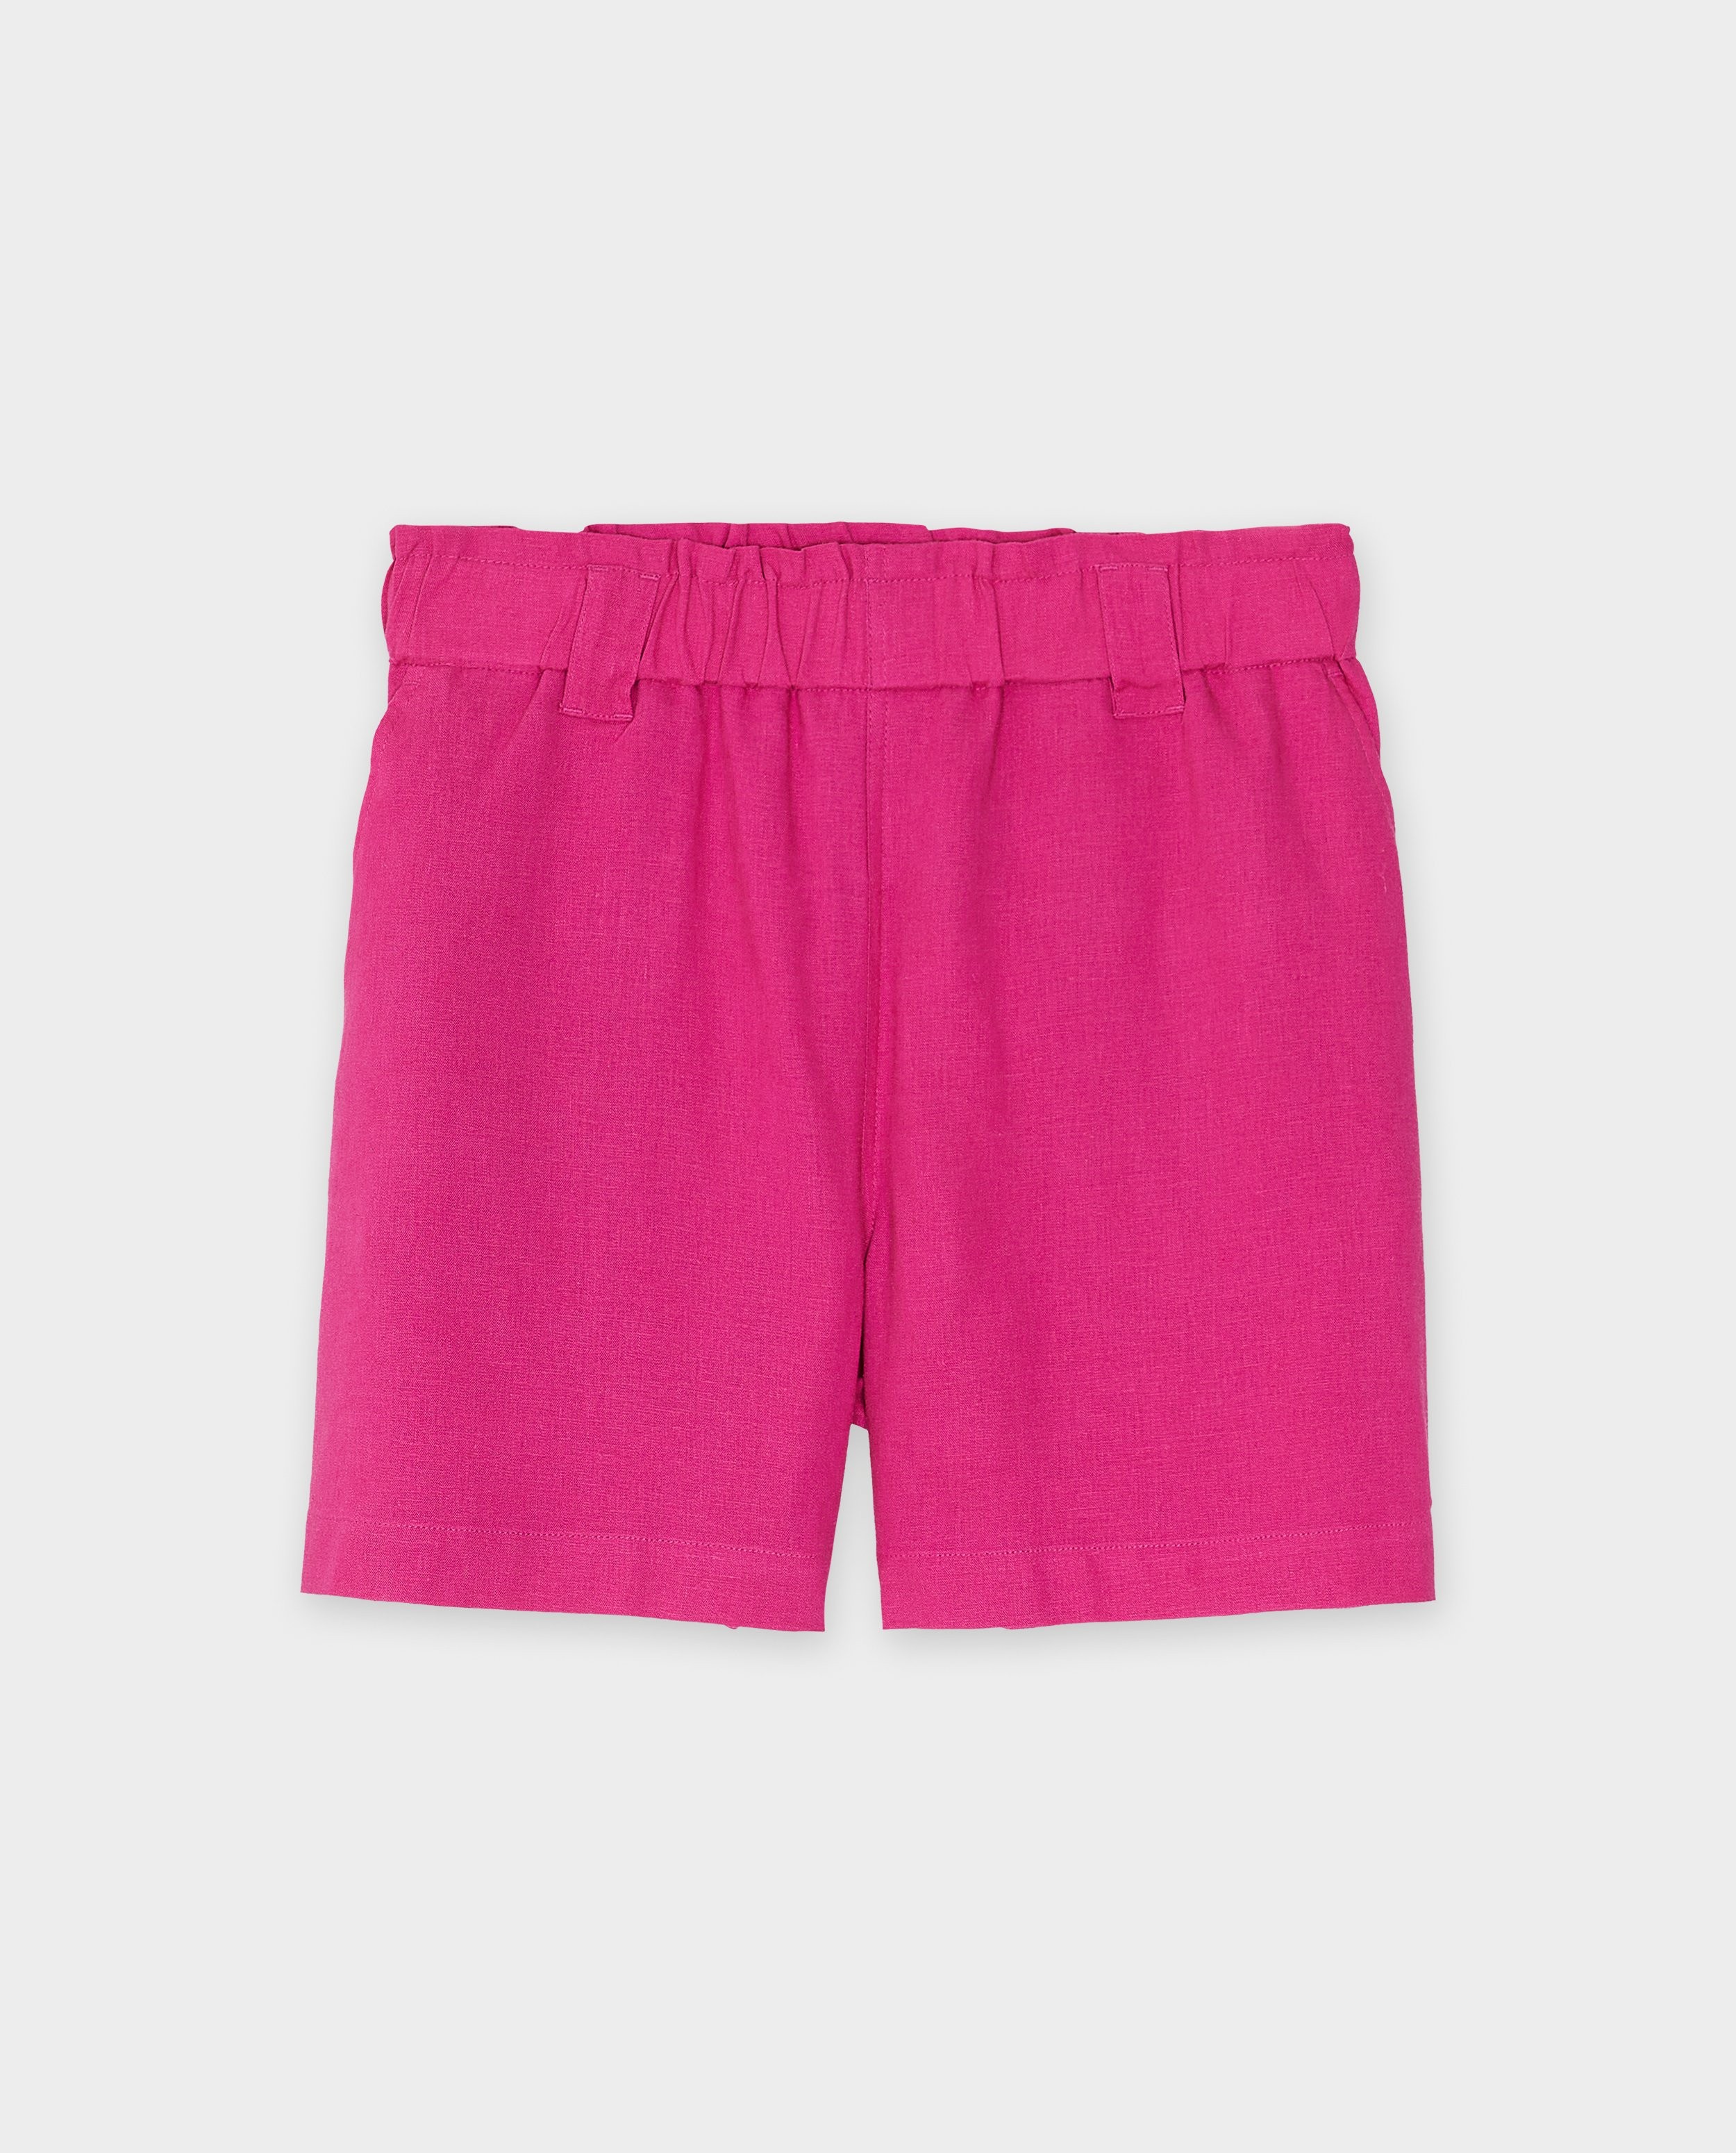 Shorten - Roze short met linnen